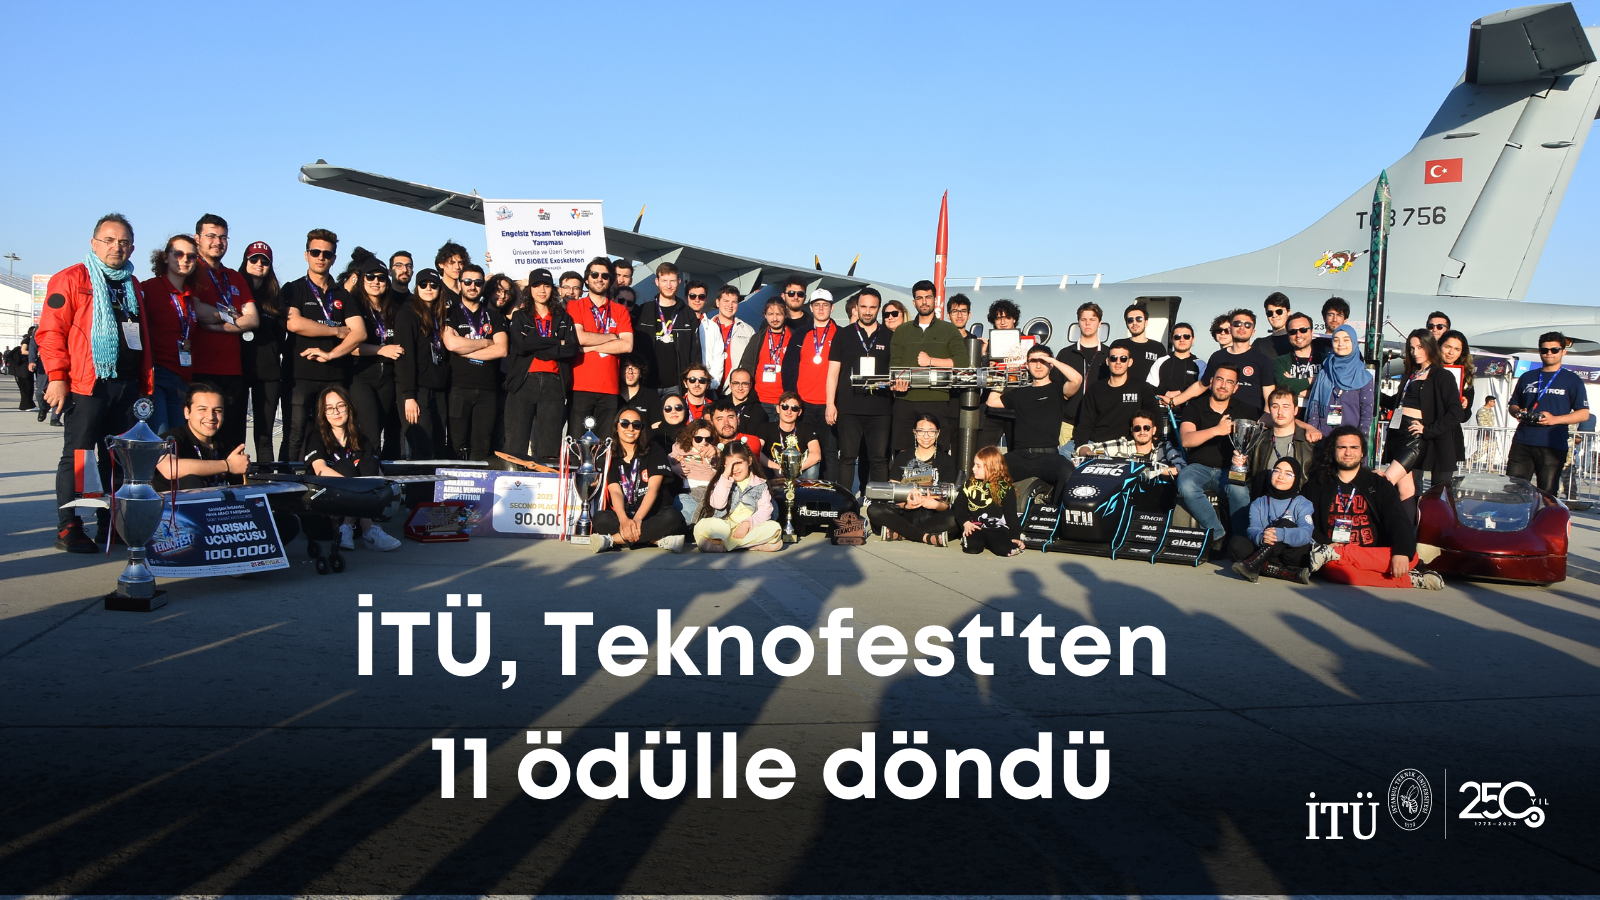 Teknofest 20232te ödül kazanan tüm İTÜ proje takımları tek bir karede, arkada Türk Hava Kuvvetleri askeri nakliye uçağı